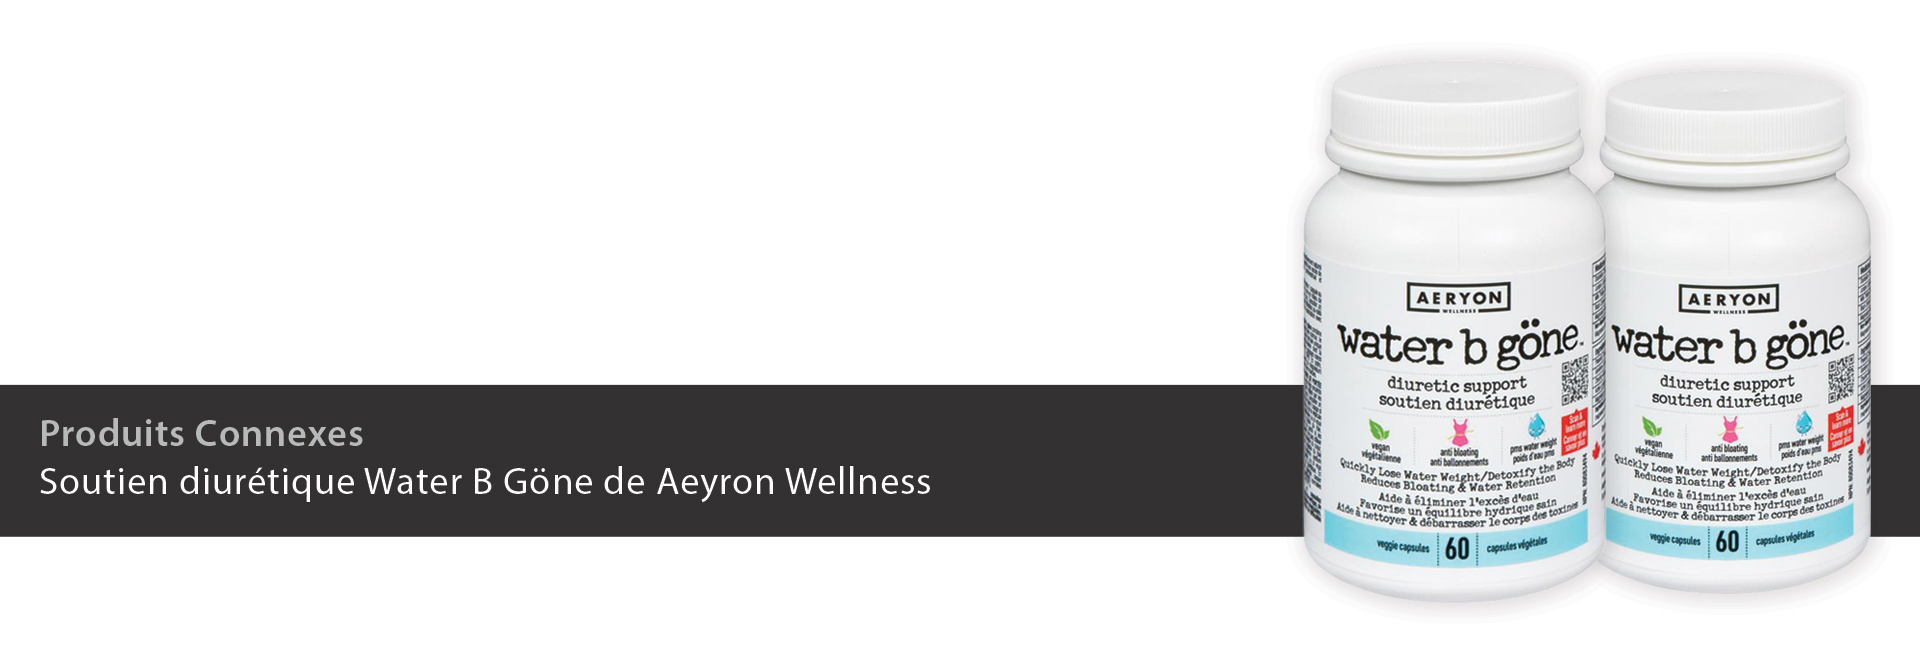 Soutien diurétique Water B Göne de Aeyron Wellness